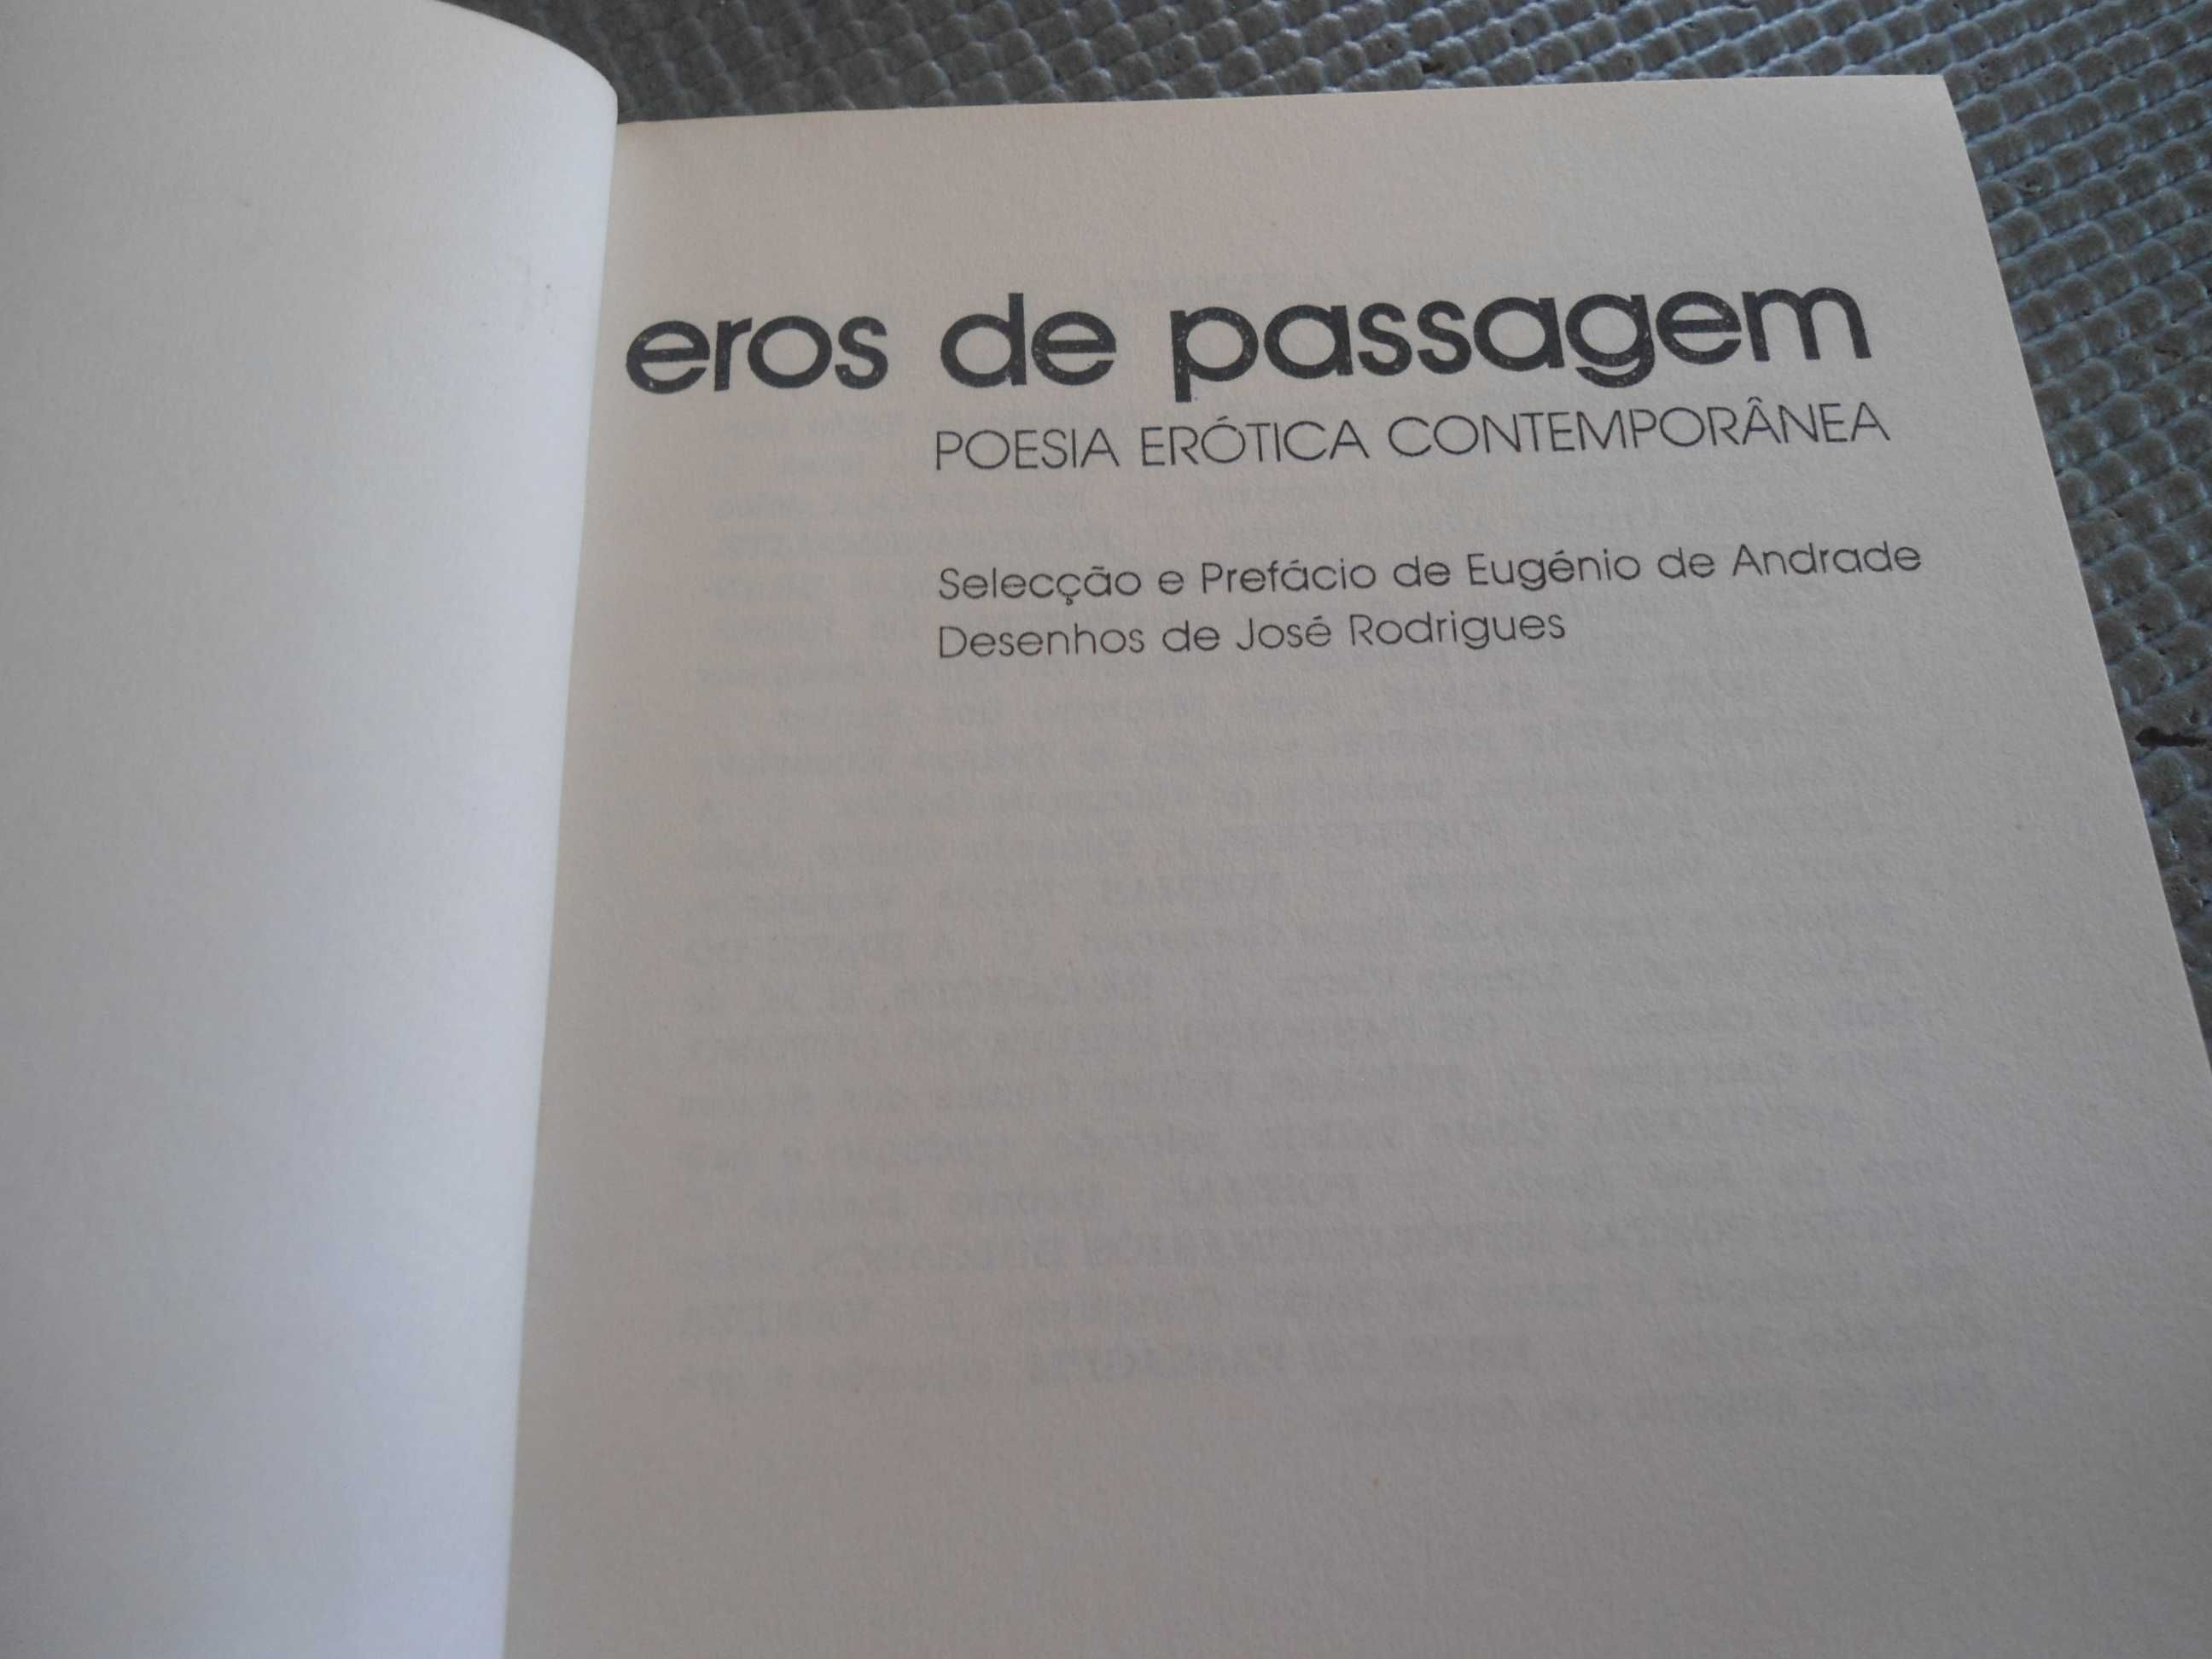 Eros de passagem-Poesia Erótica Contemporânea (1982)